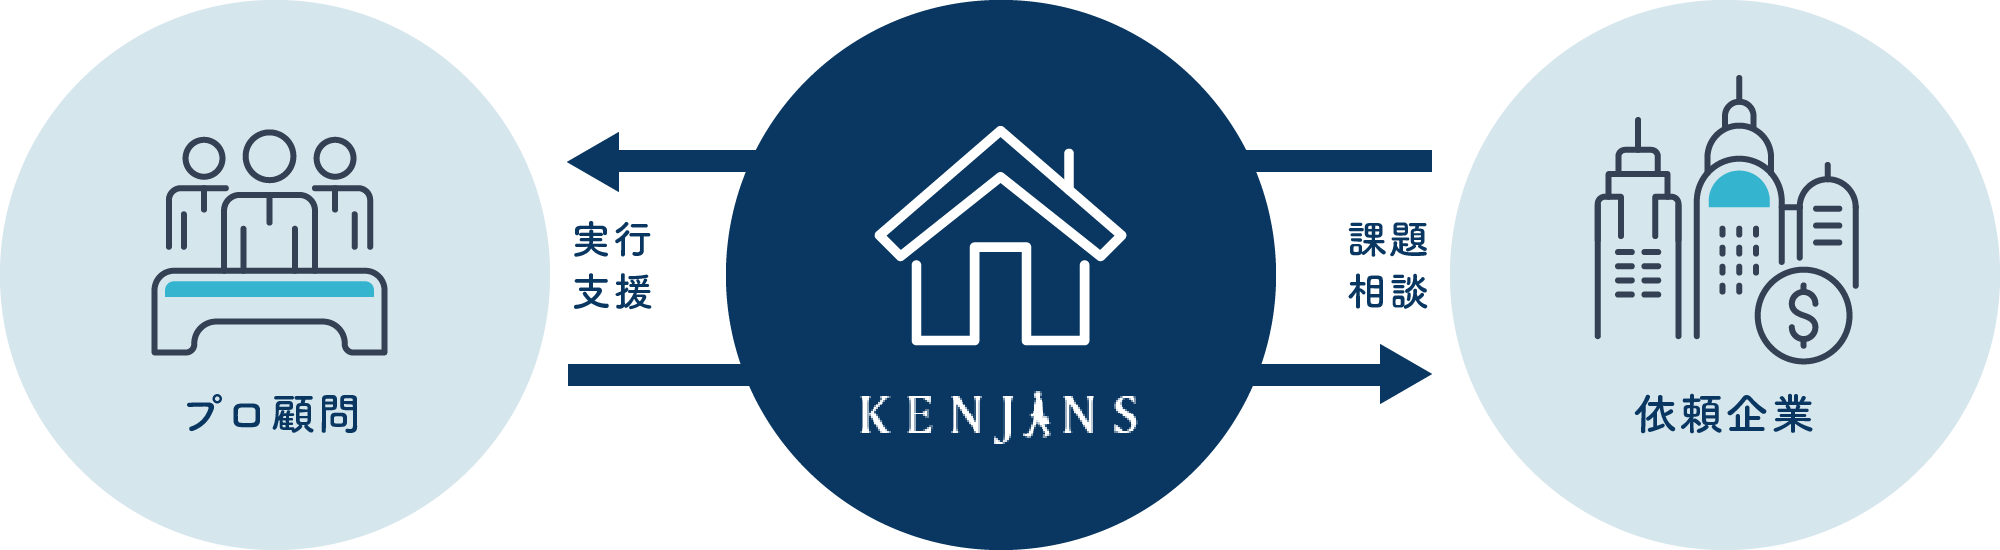 KENJINSのサービス利用の契約形態と支援スキーム